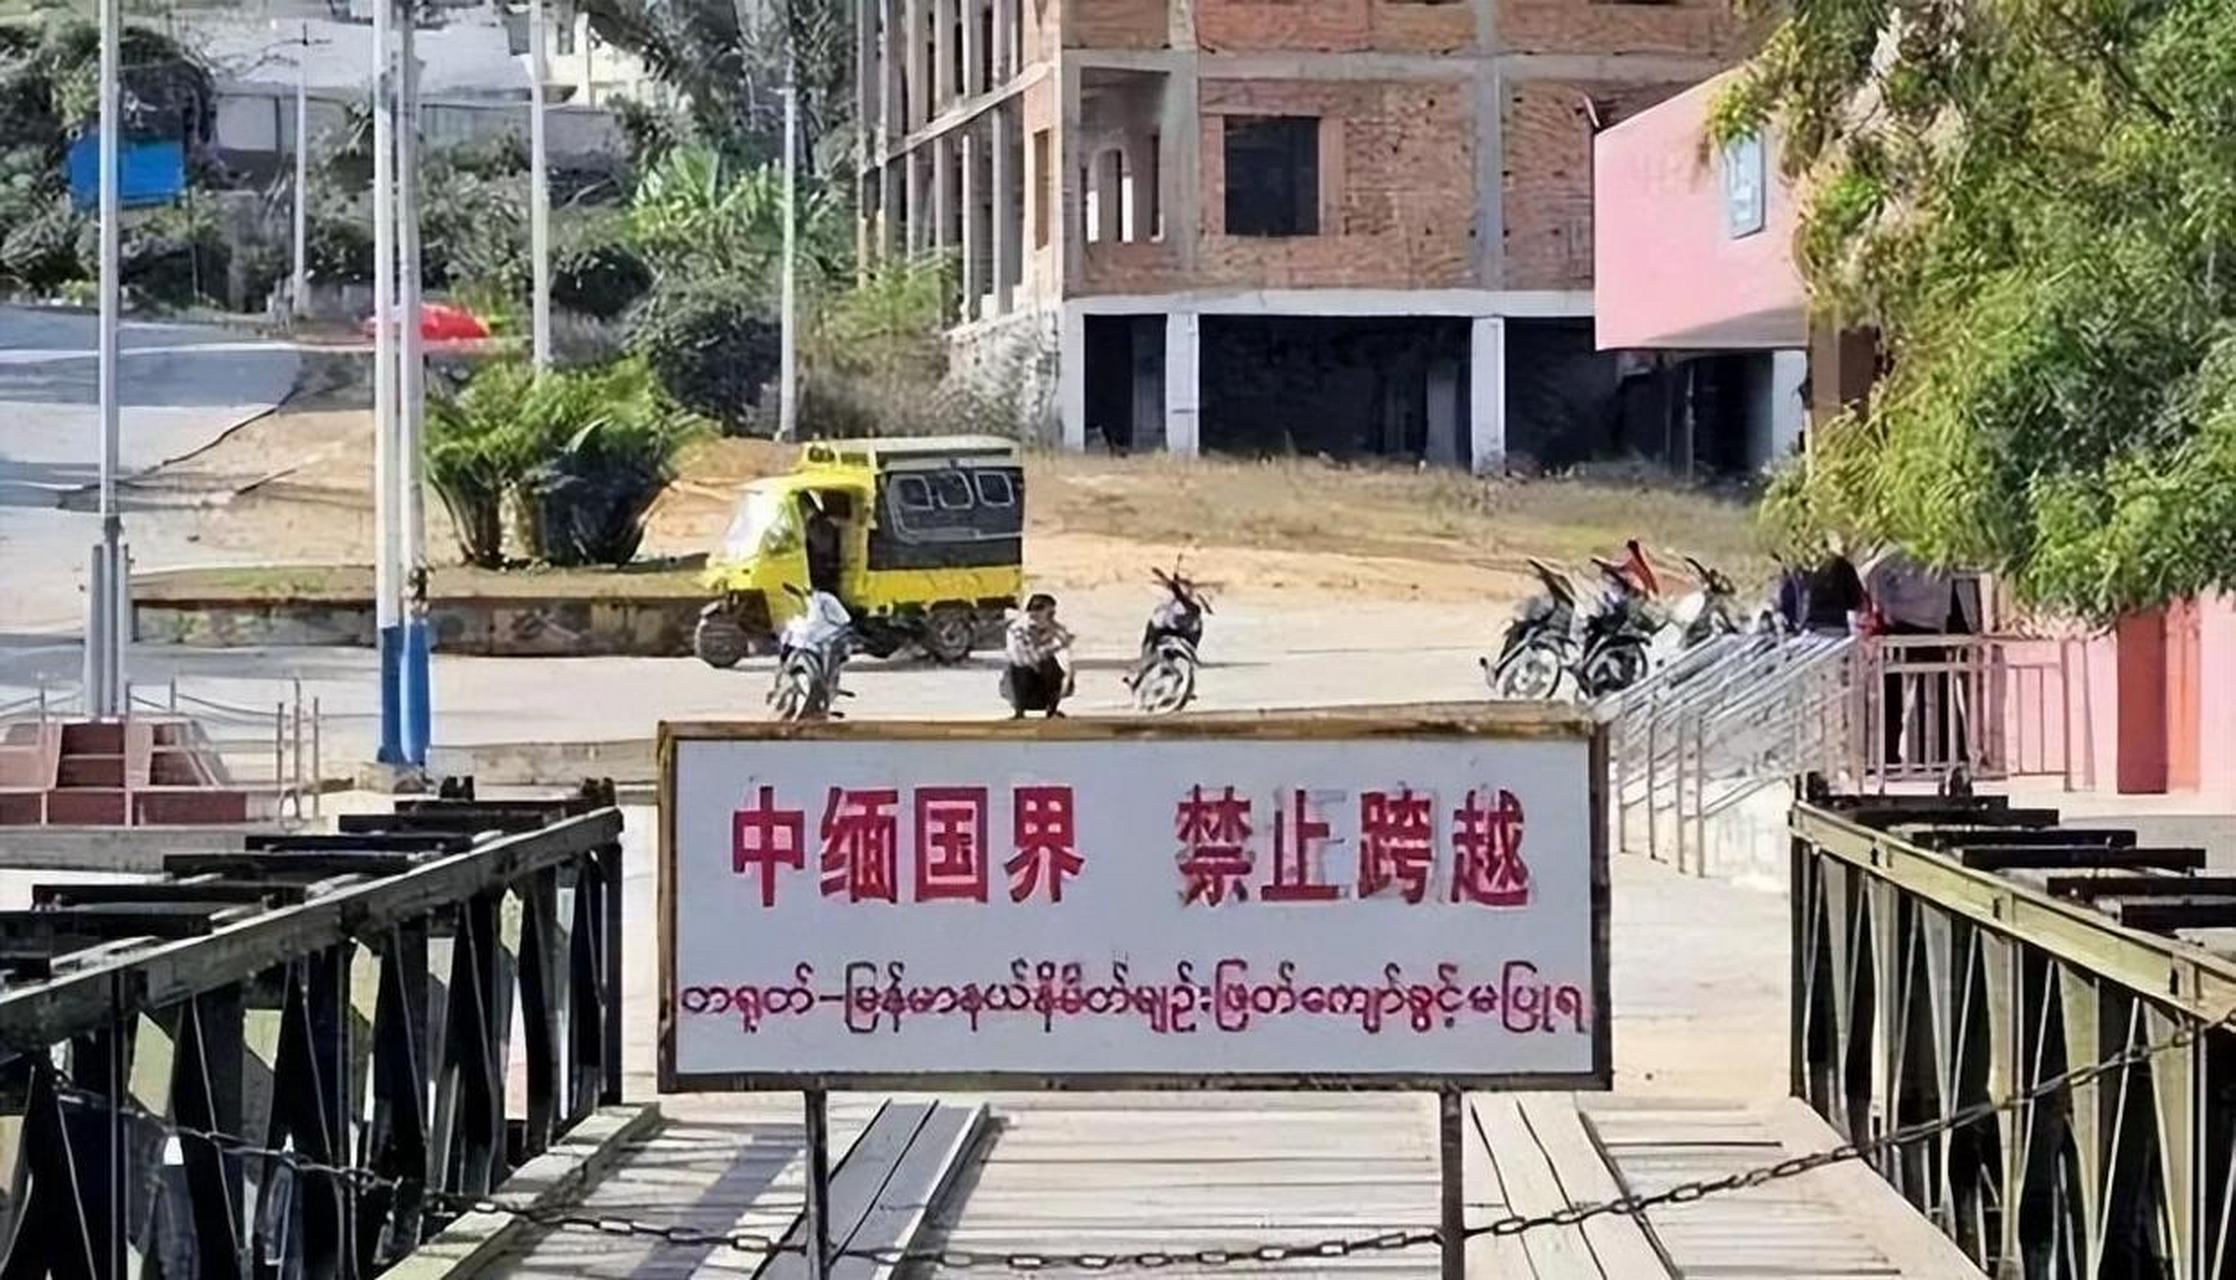 再谈缅北 缅甸与中国有两千多公里的边境线,绝大部分属于与云南接壤